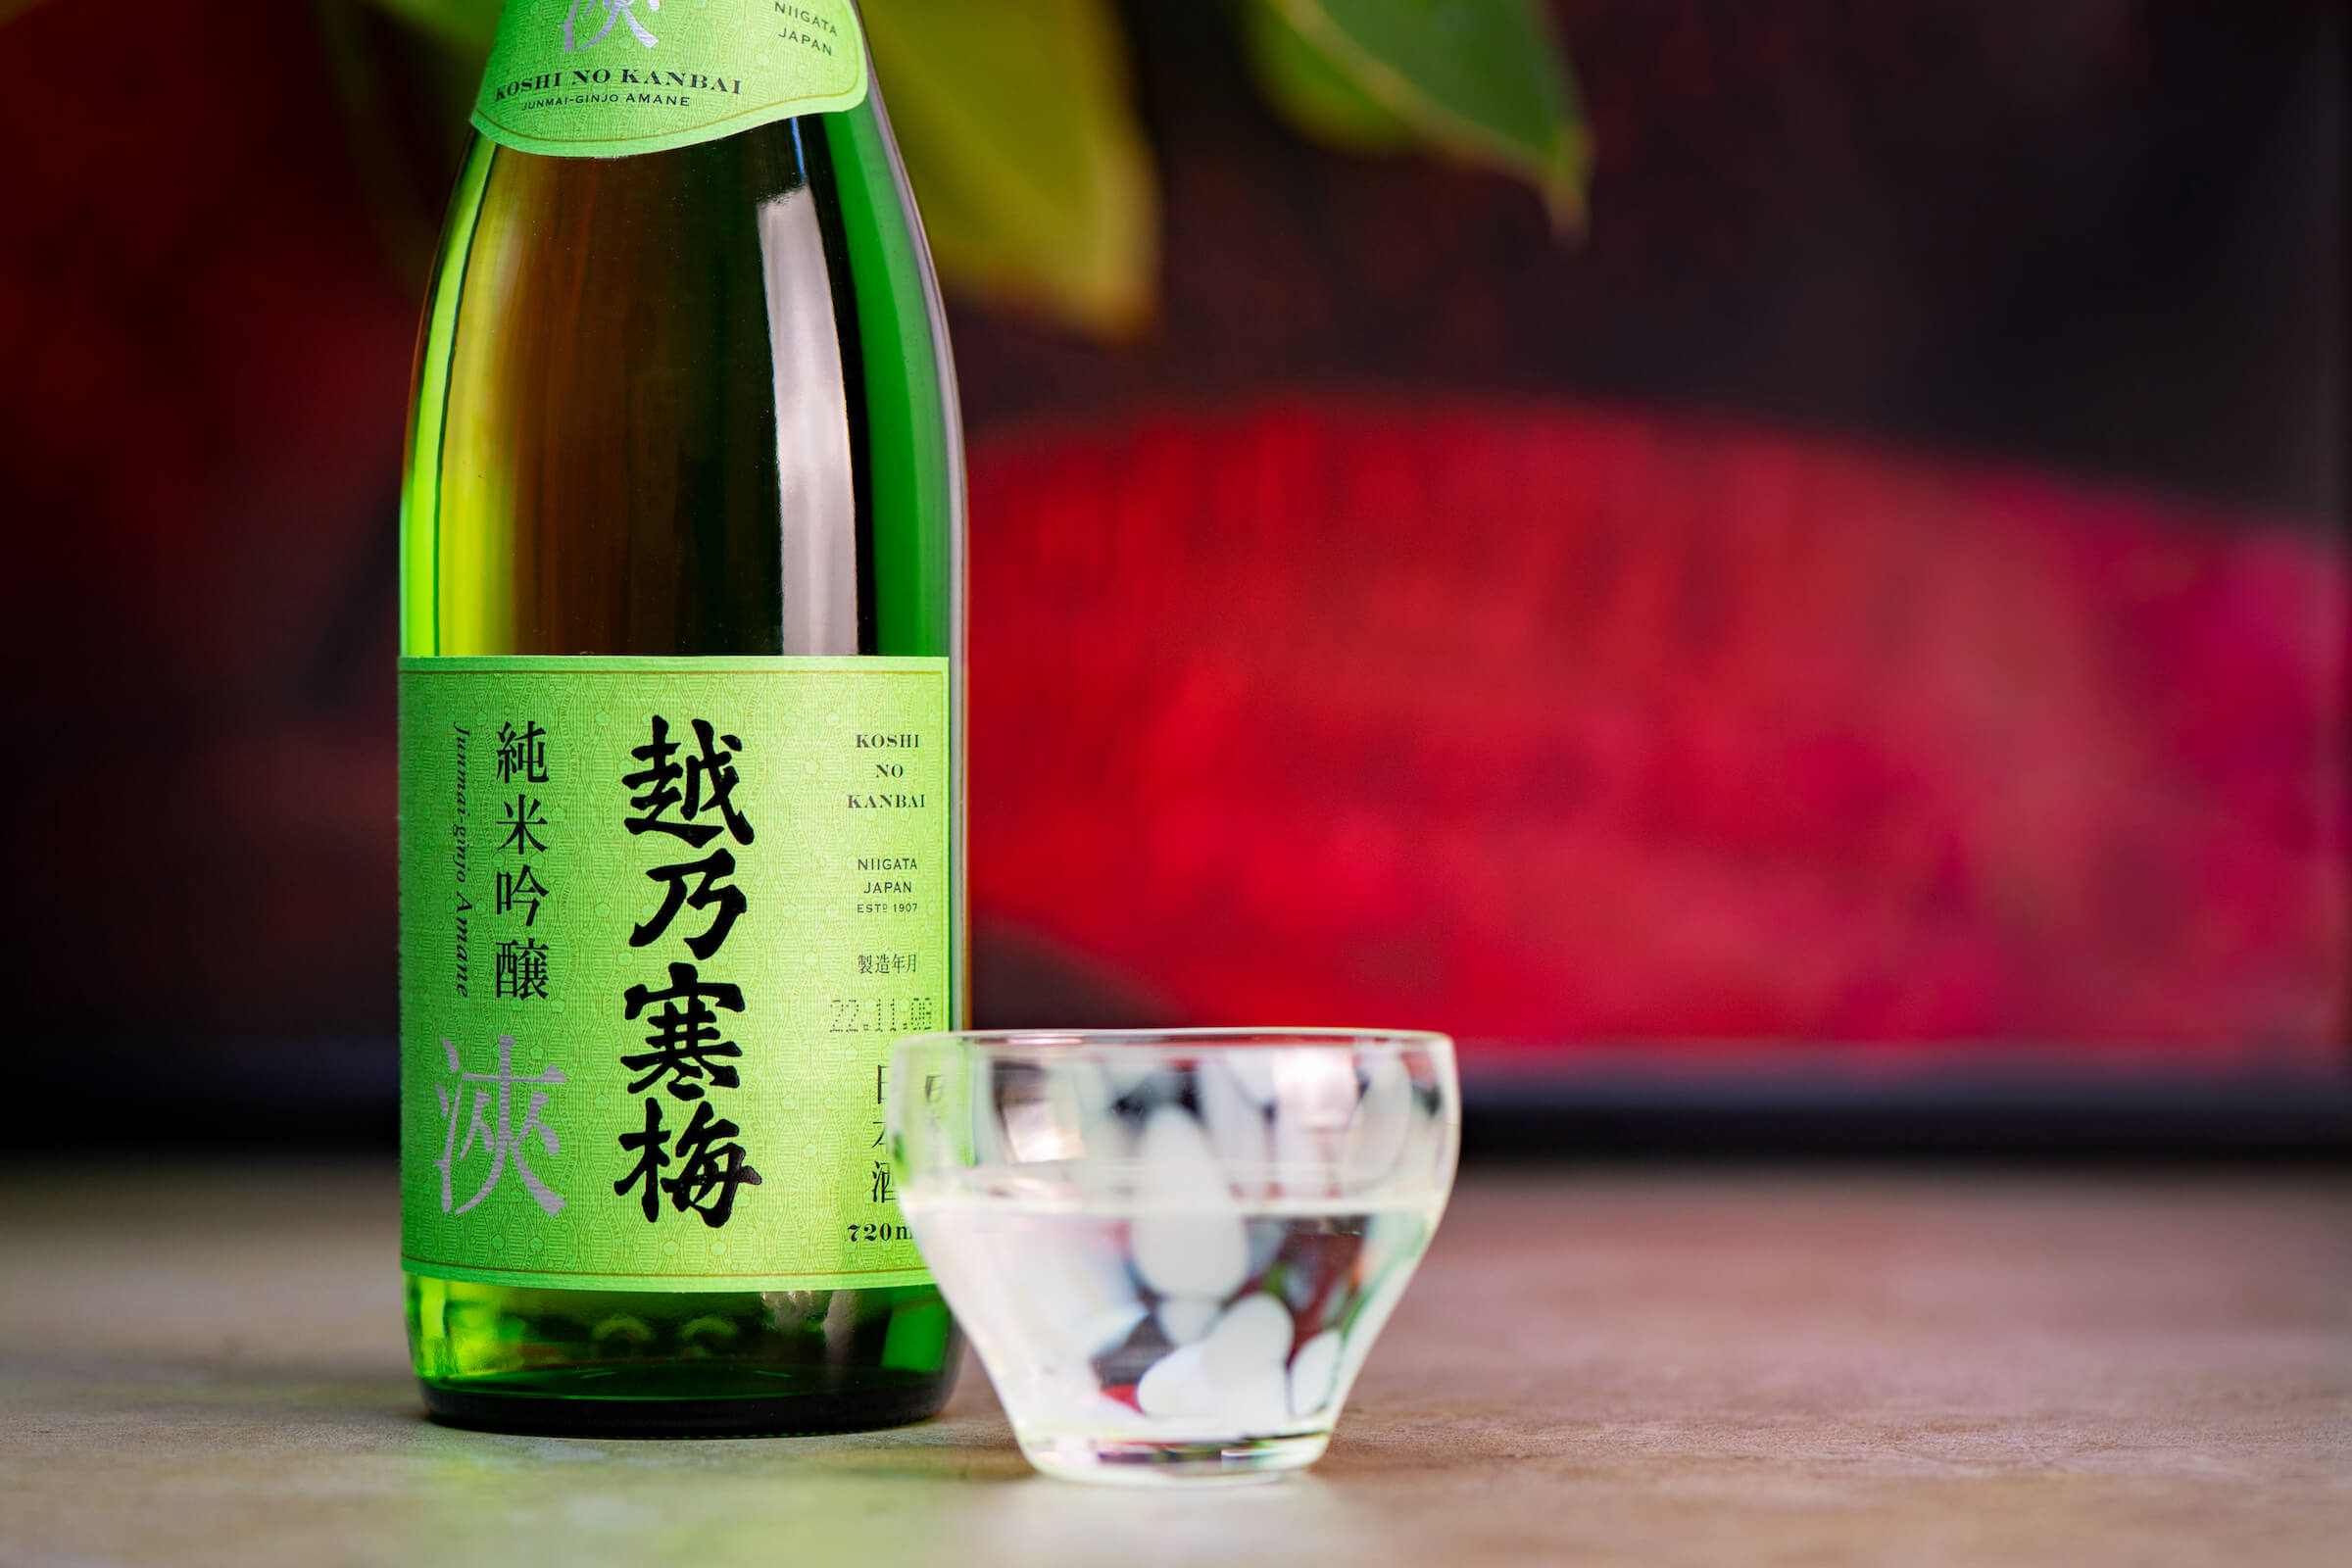 Koshi no Kanbai “Amane” bottle